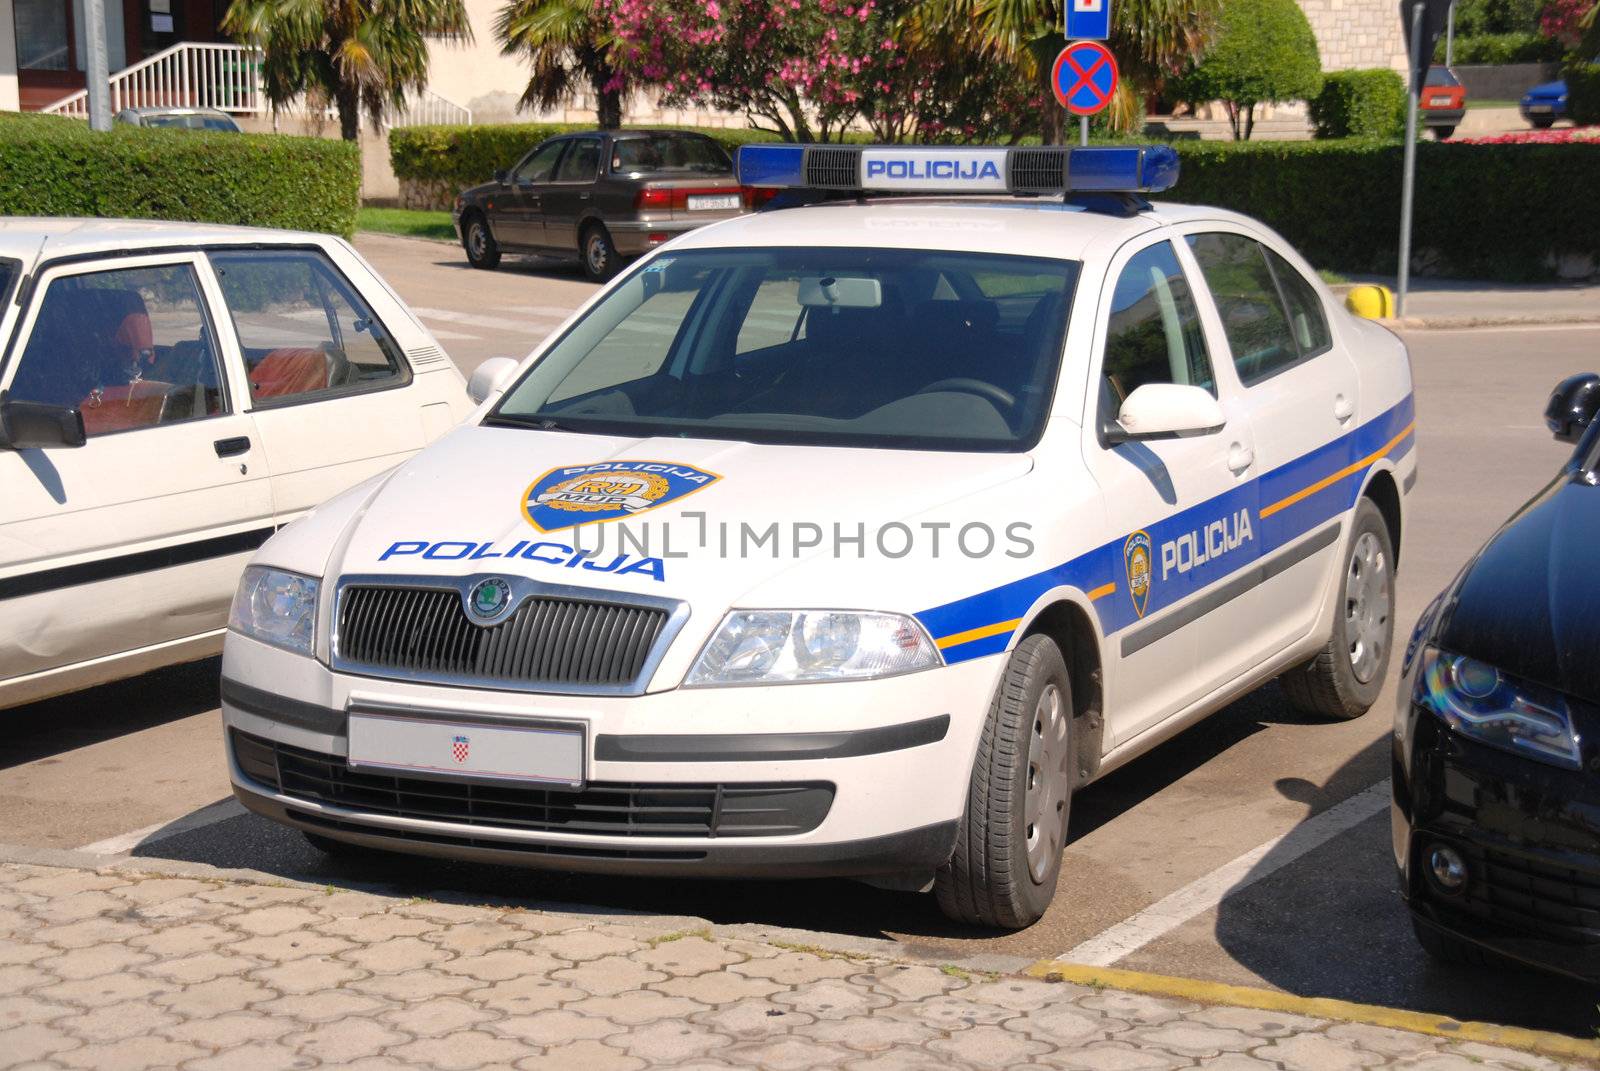 Police car in croatia. by wojciechkozlowski